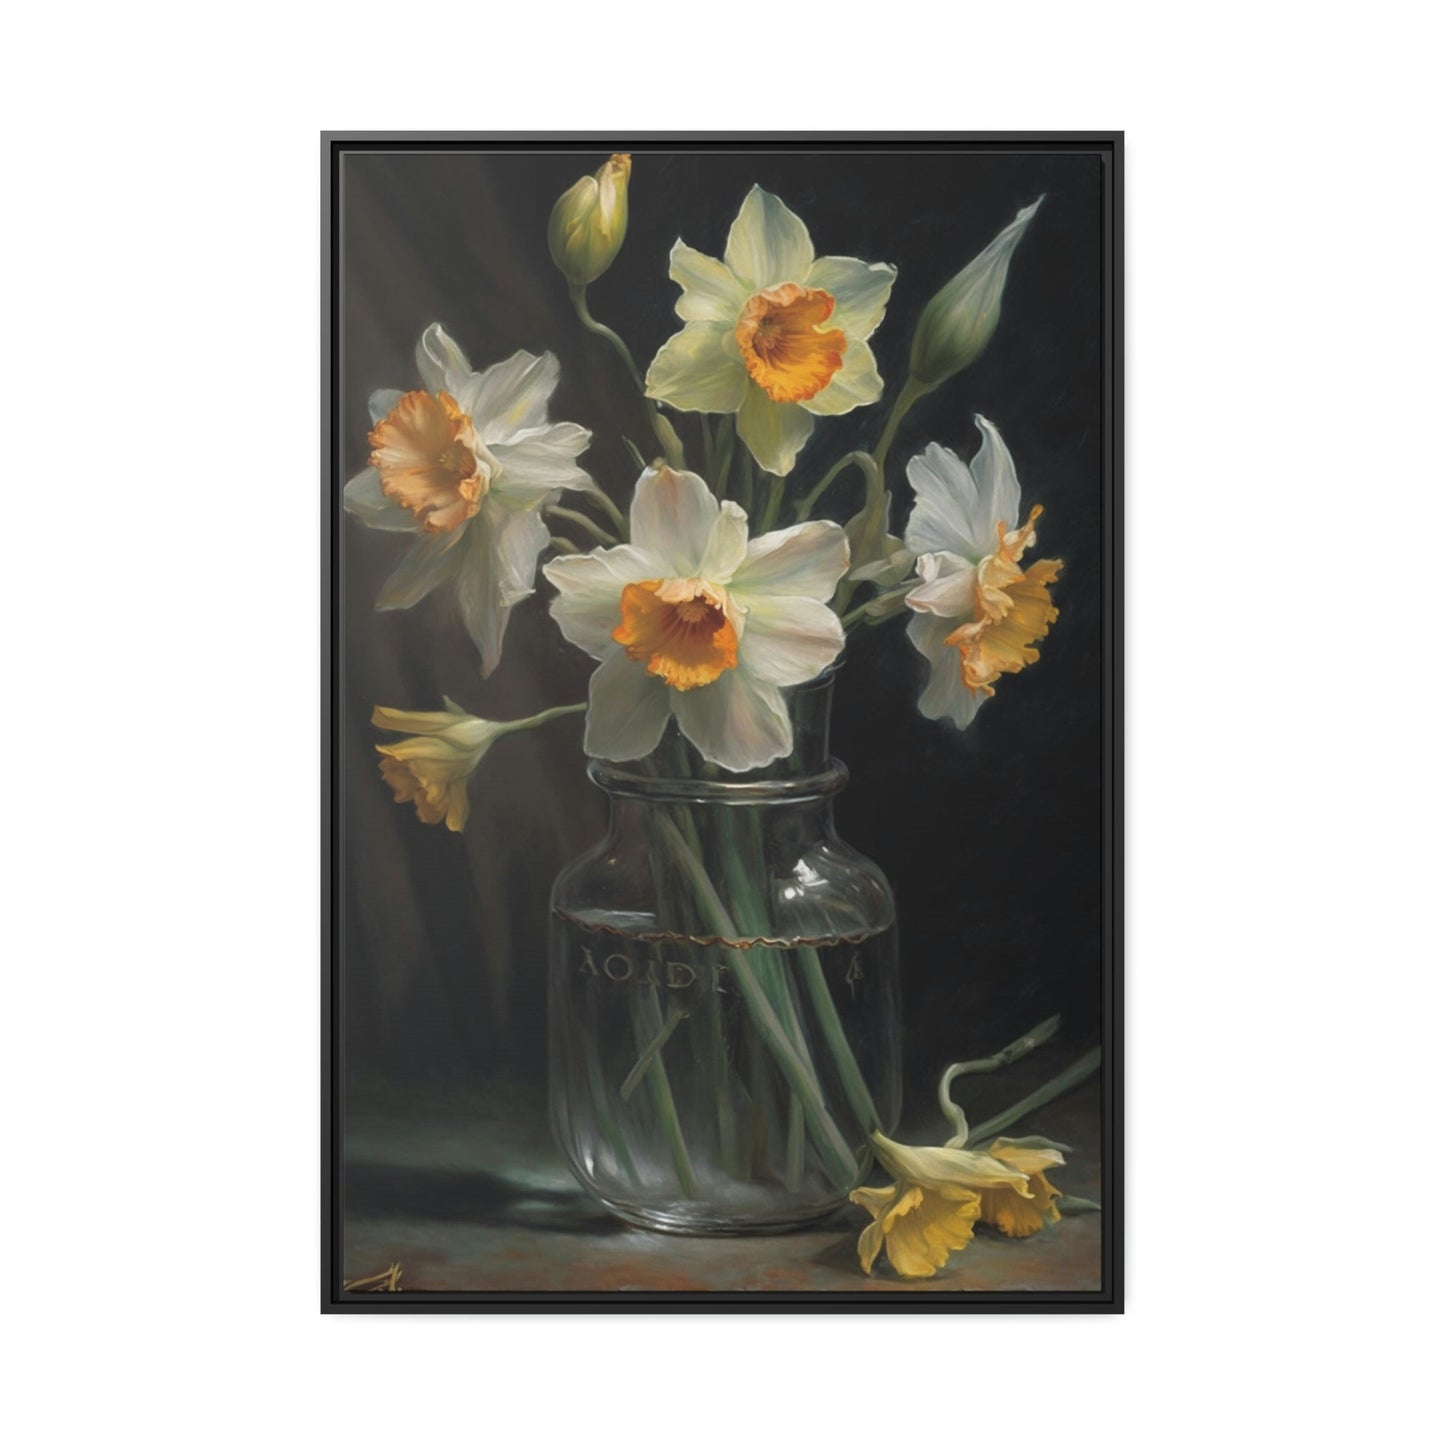 Daffodil Dreams: A Melody of Bloom